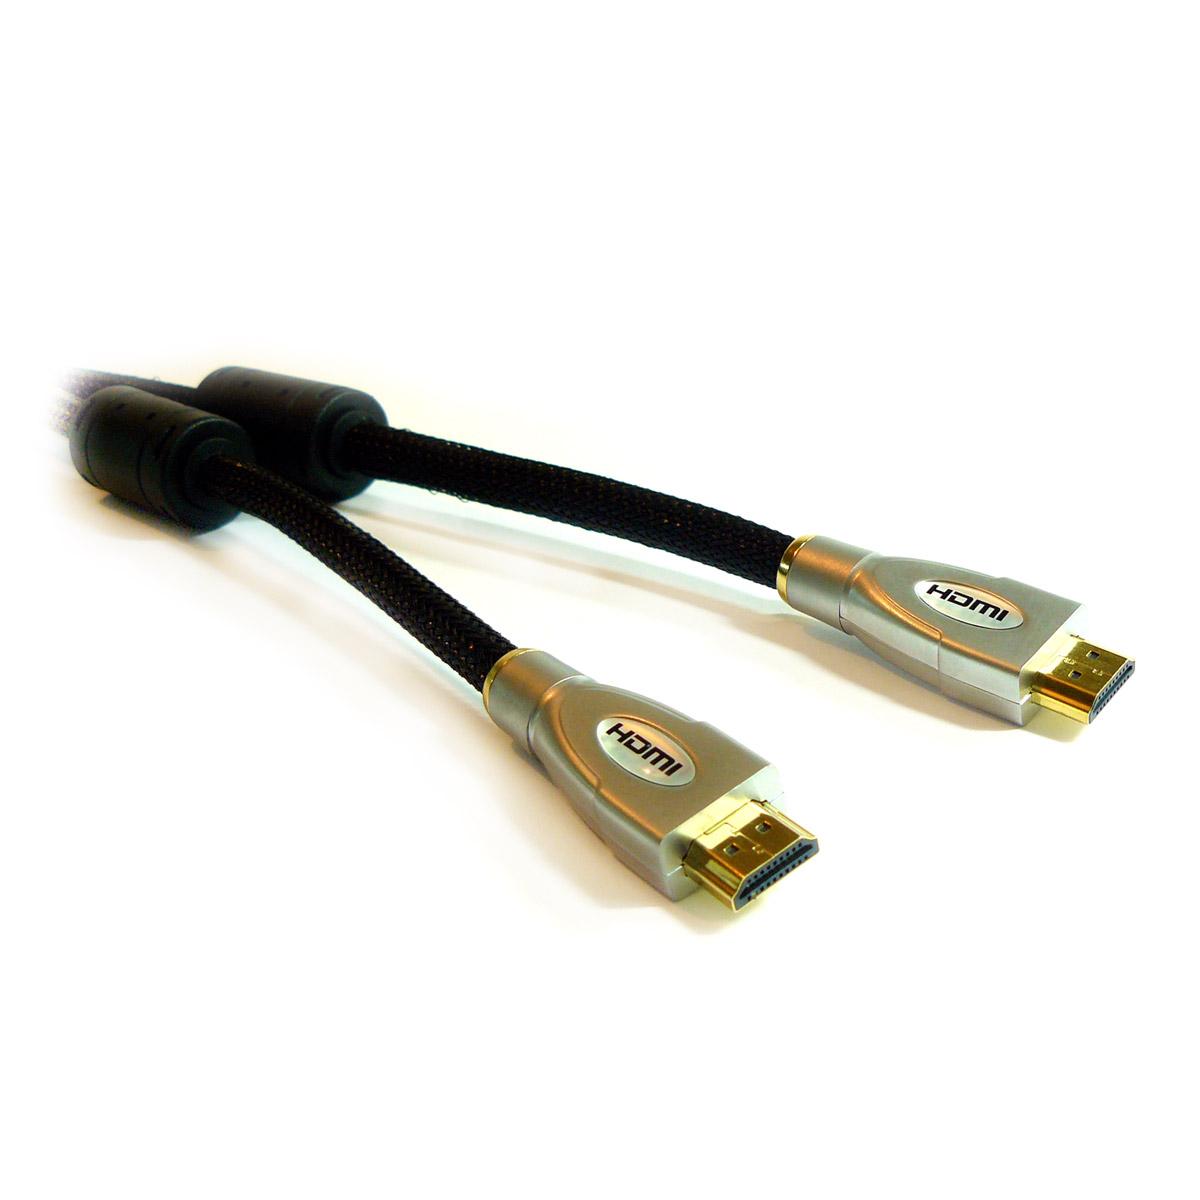 Foto Cable hdmi v1.3 premium gold 3.0m